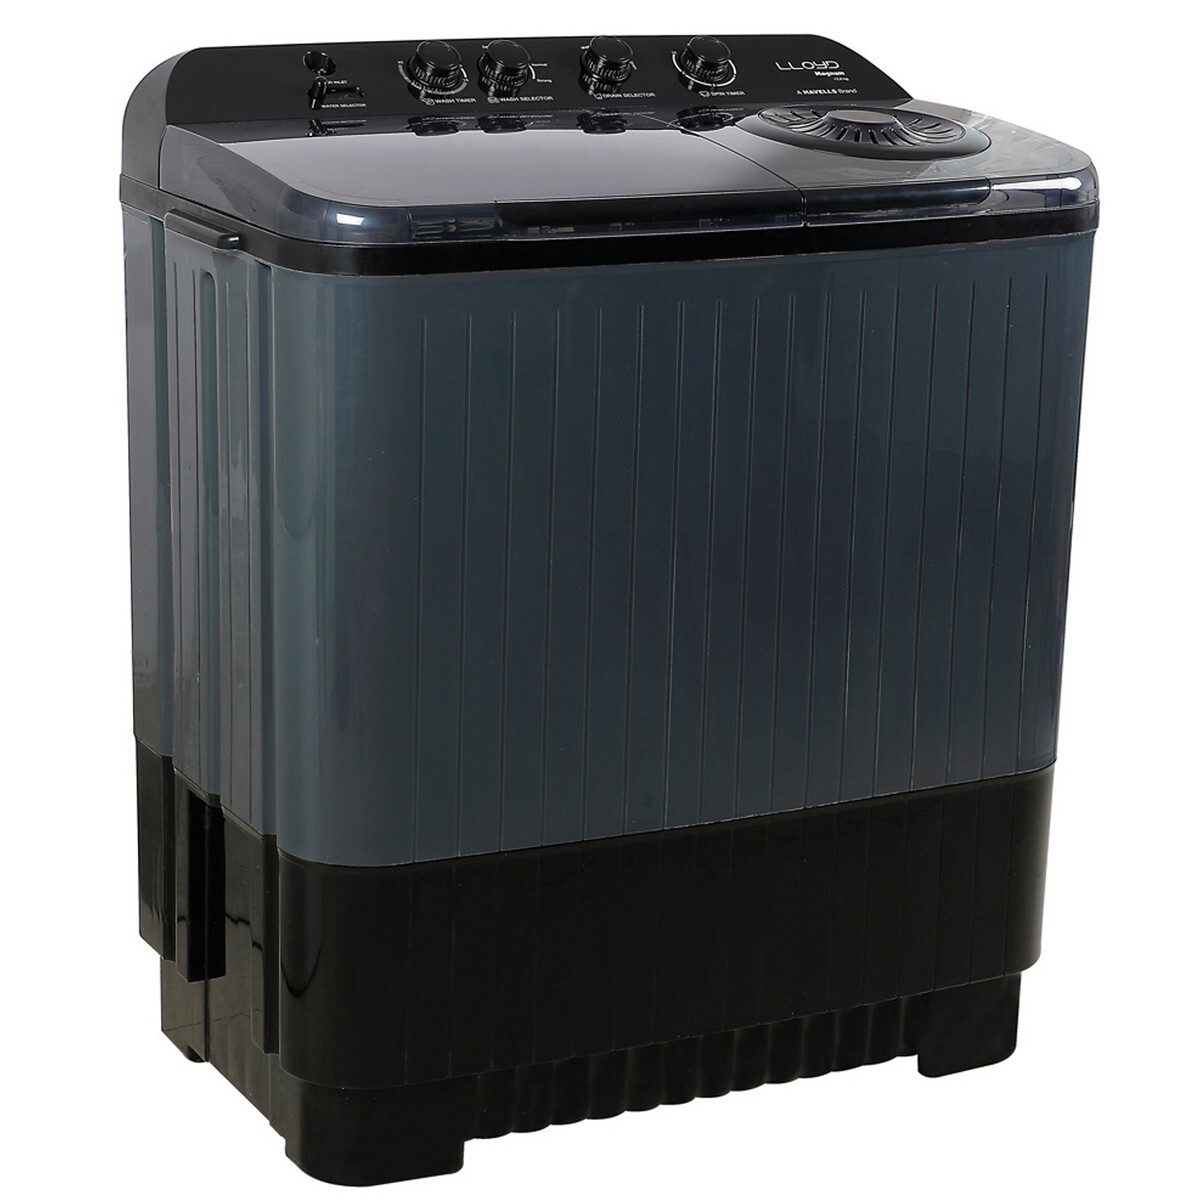 Lloyd Semi Automatic Washing Machine GLWMS11ADGMA 11kg